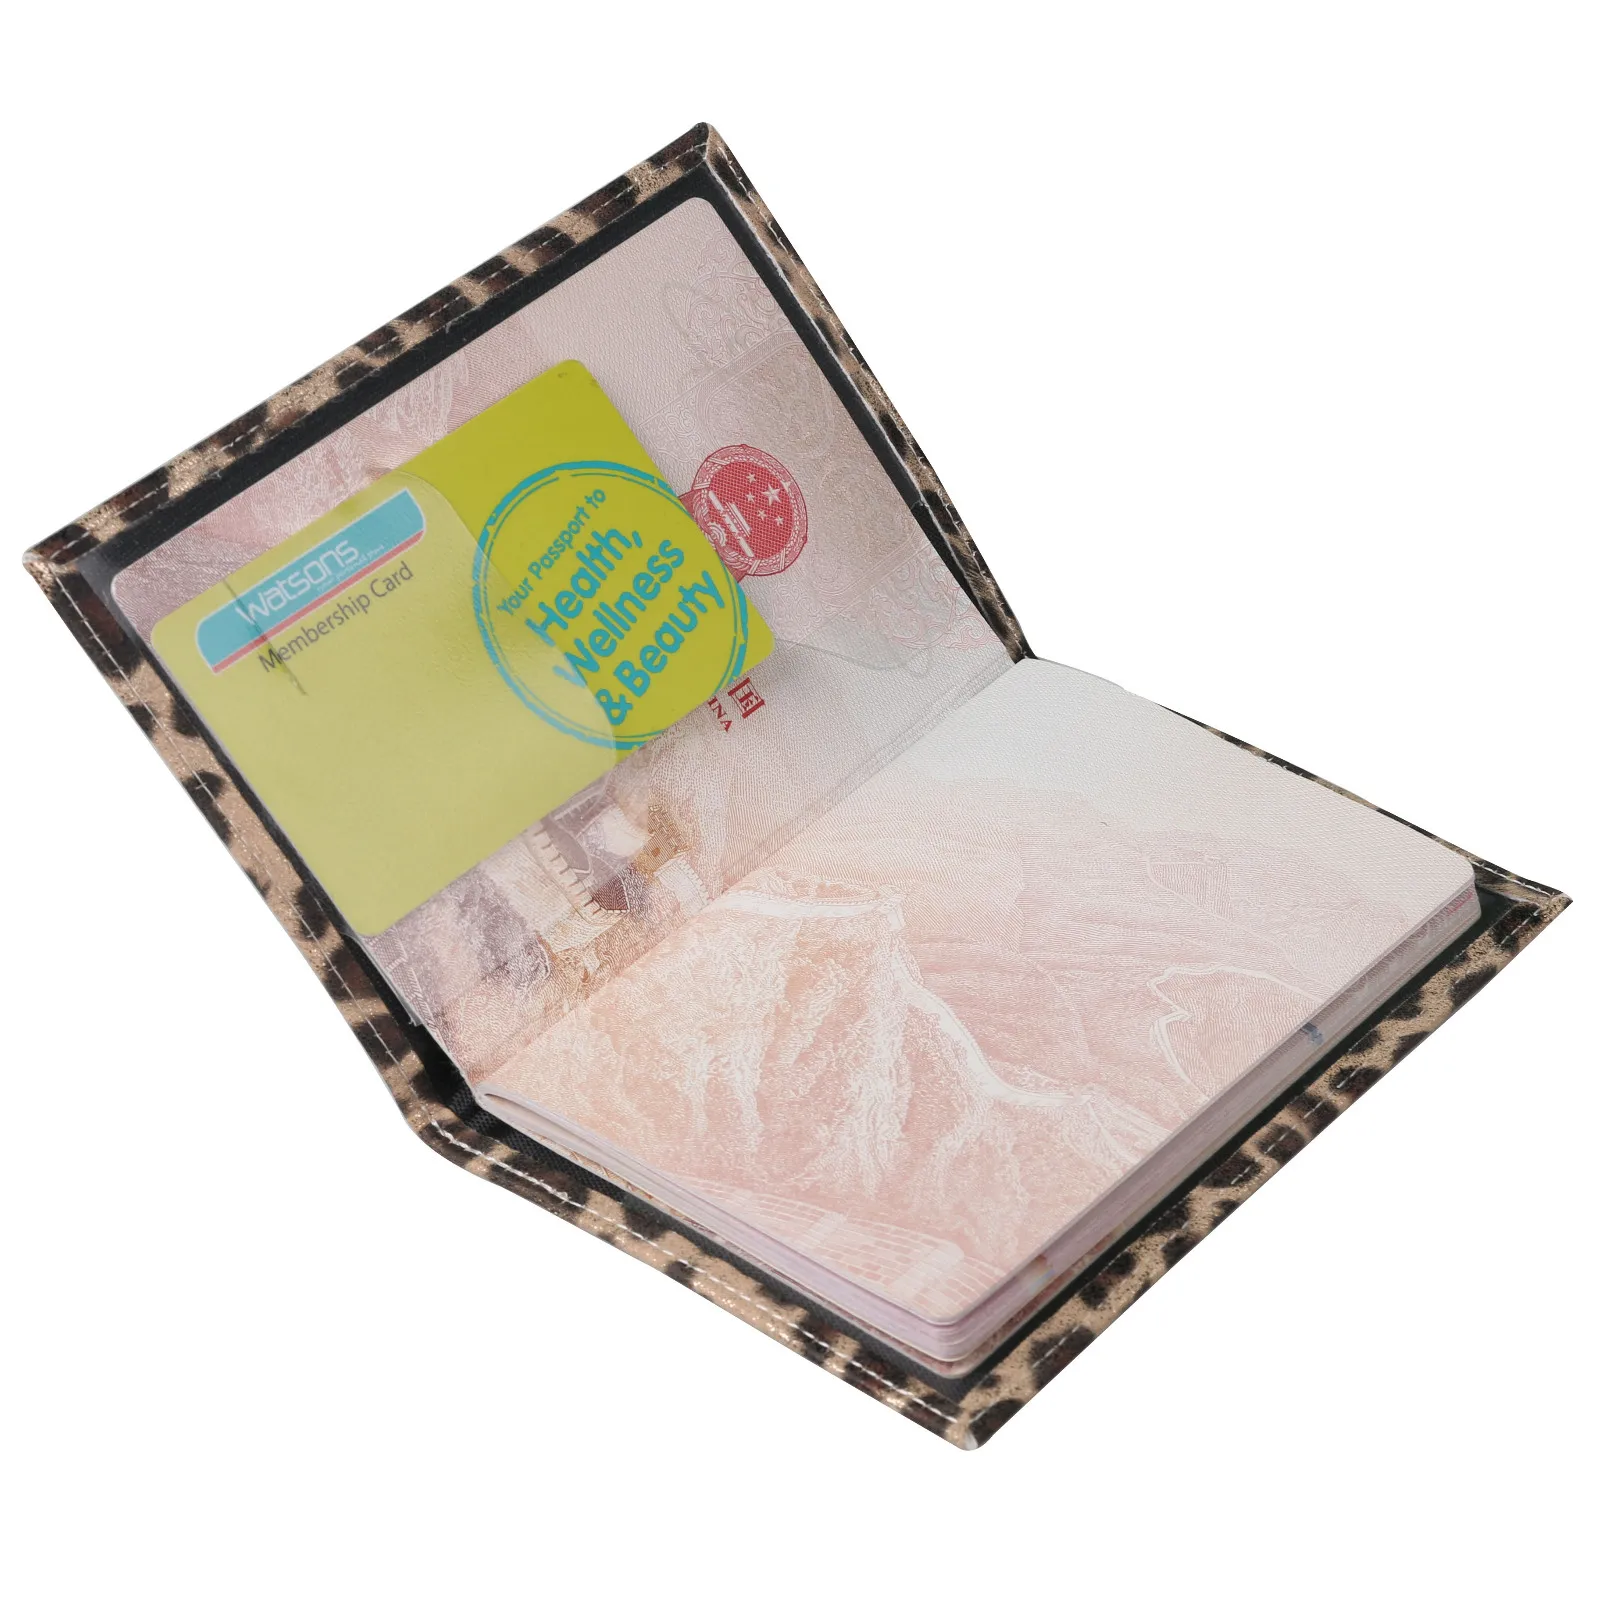 Обложка на паспорт леопардовая Чехол-кошелек в деловом стиле, для паспорта держатель для карты из мягкой кожи крышка карты посылка; роскошная женская сумка кожаный кошелек